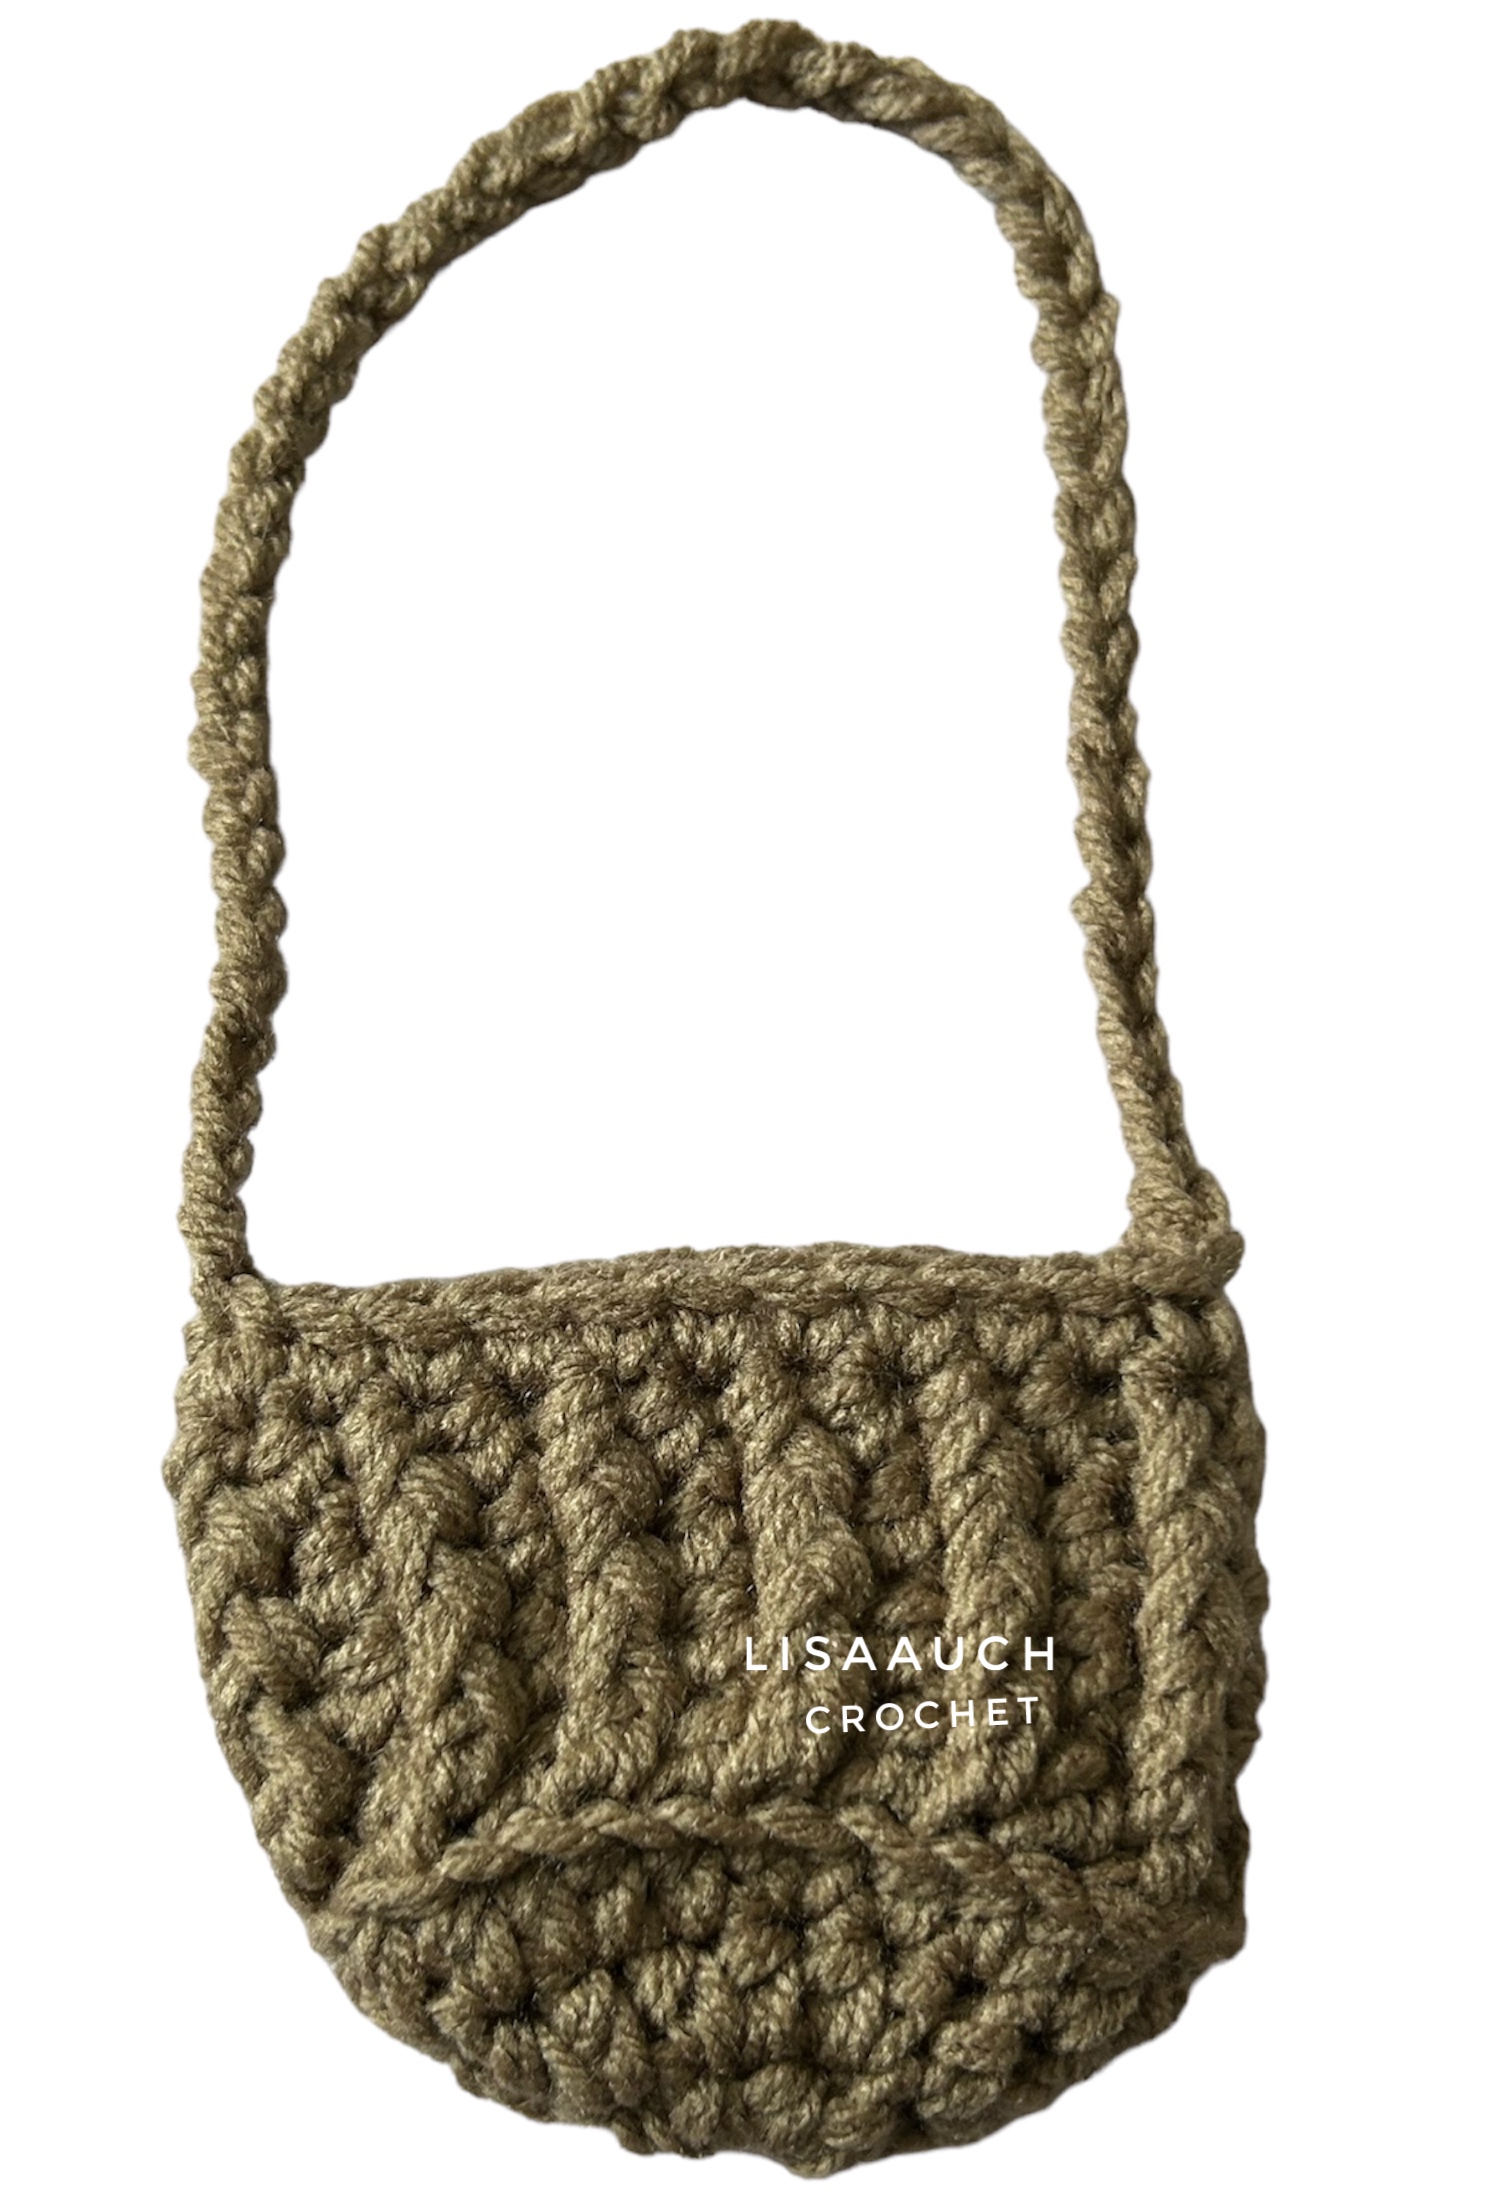 CAR Crochet Accessory - Rear View mirror Hanging flower basket CROCHET Pattern